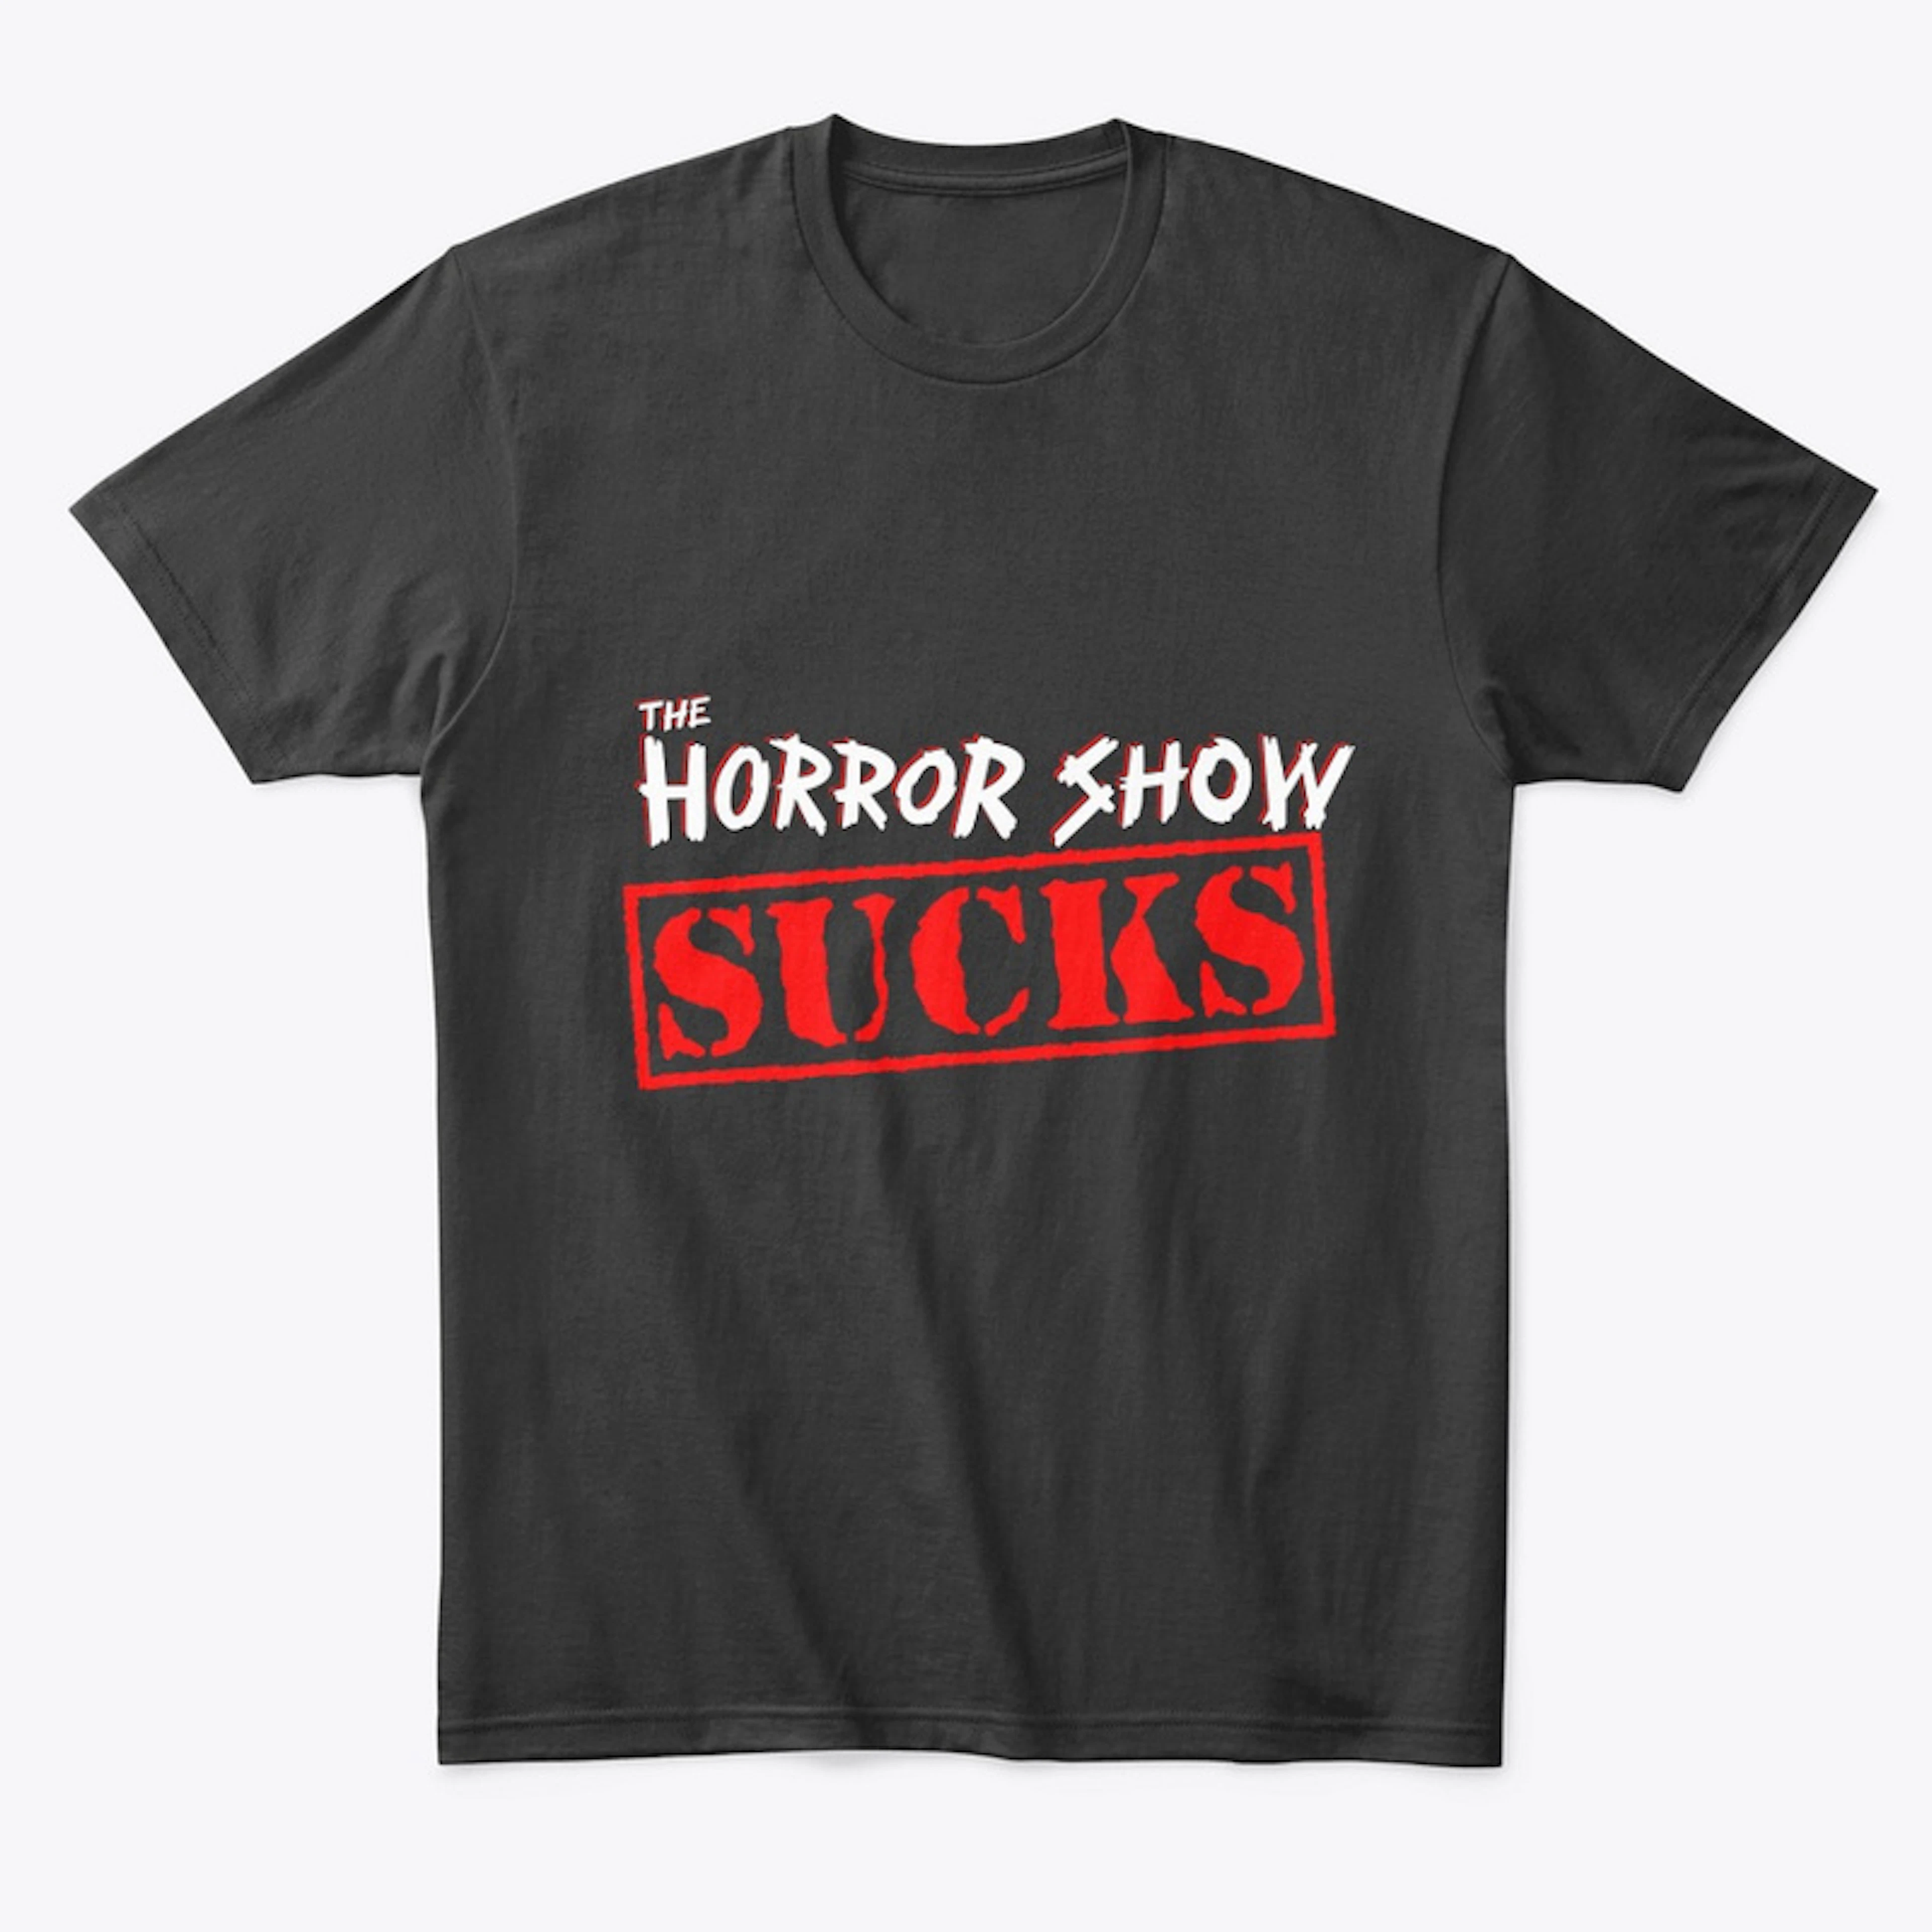 The Horror Show Sucks V2 - The Like Edt